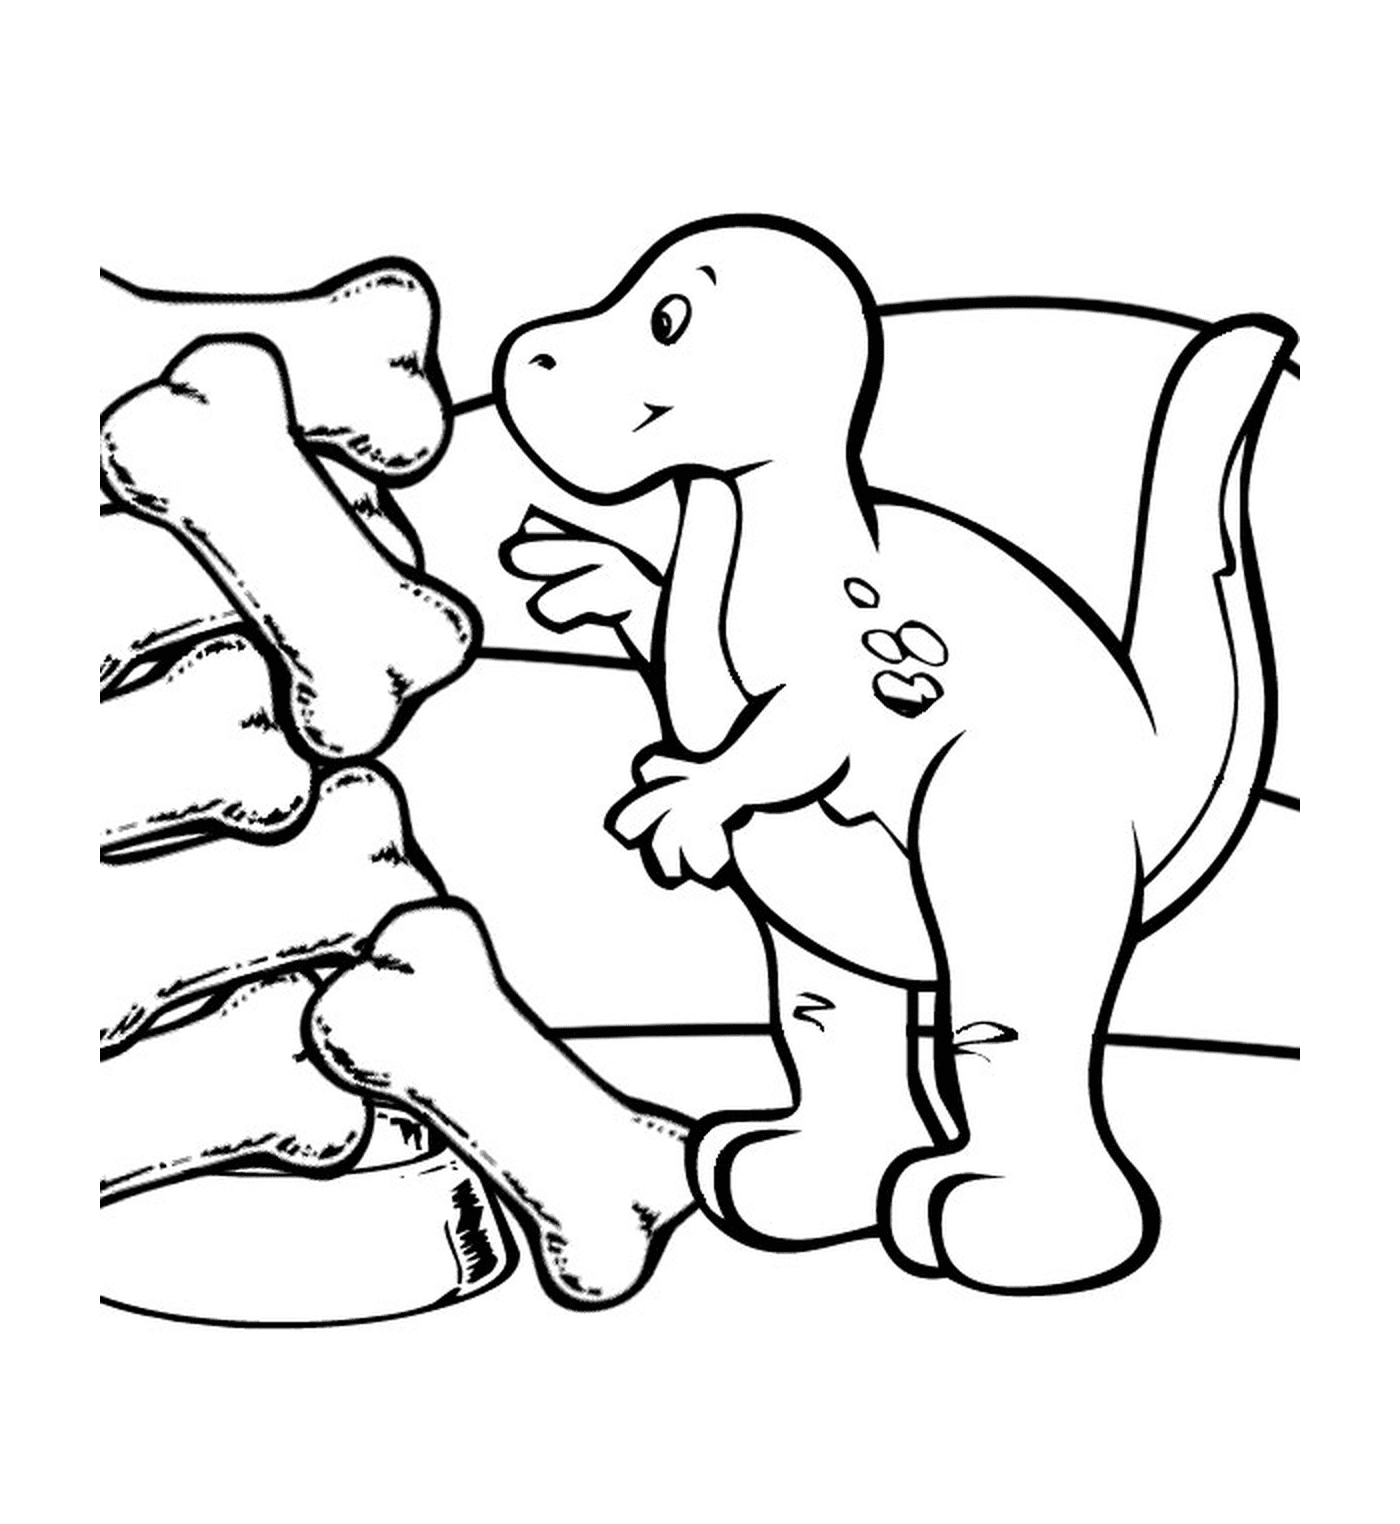  Dinossauro ao lado de ossos fossilizados 